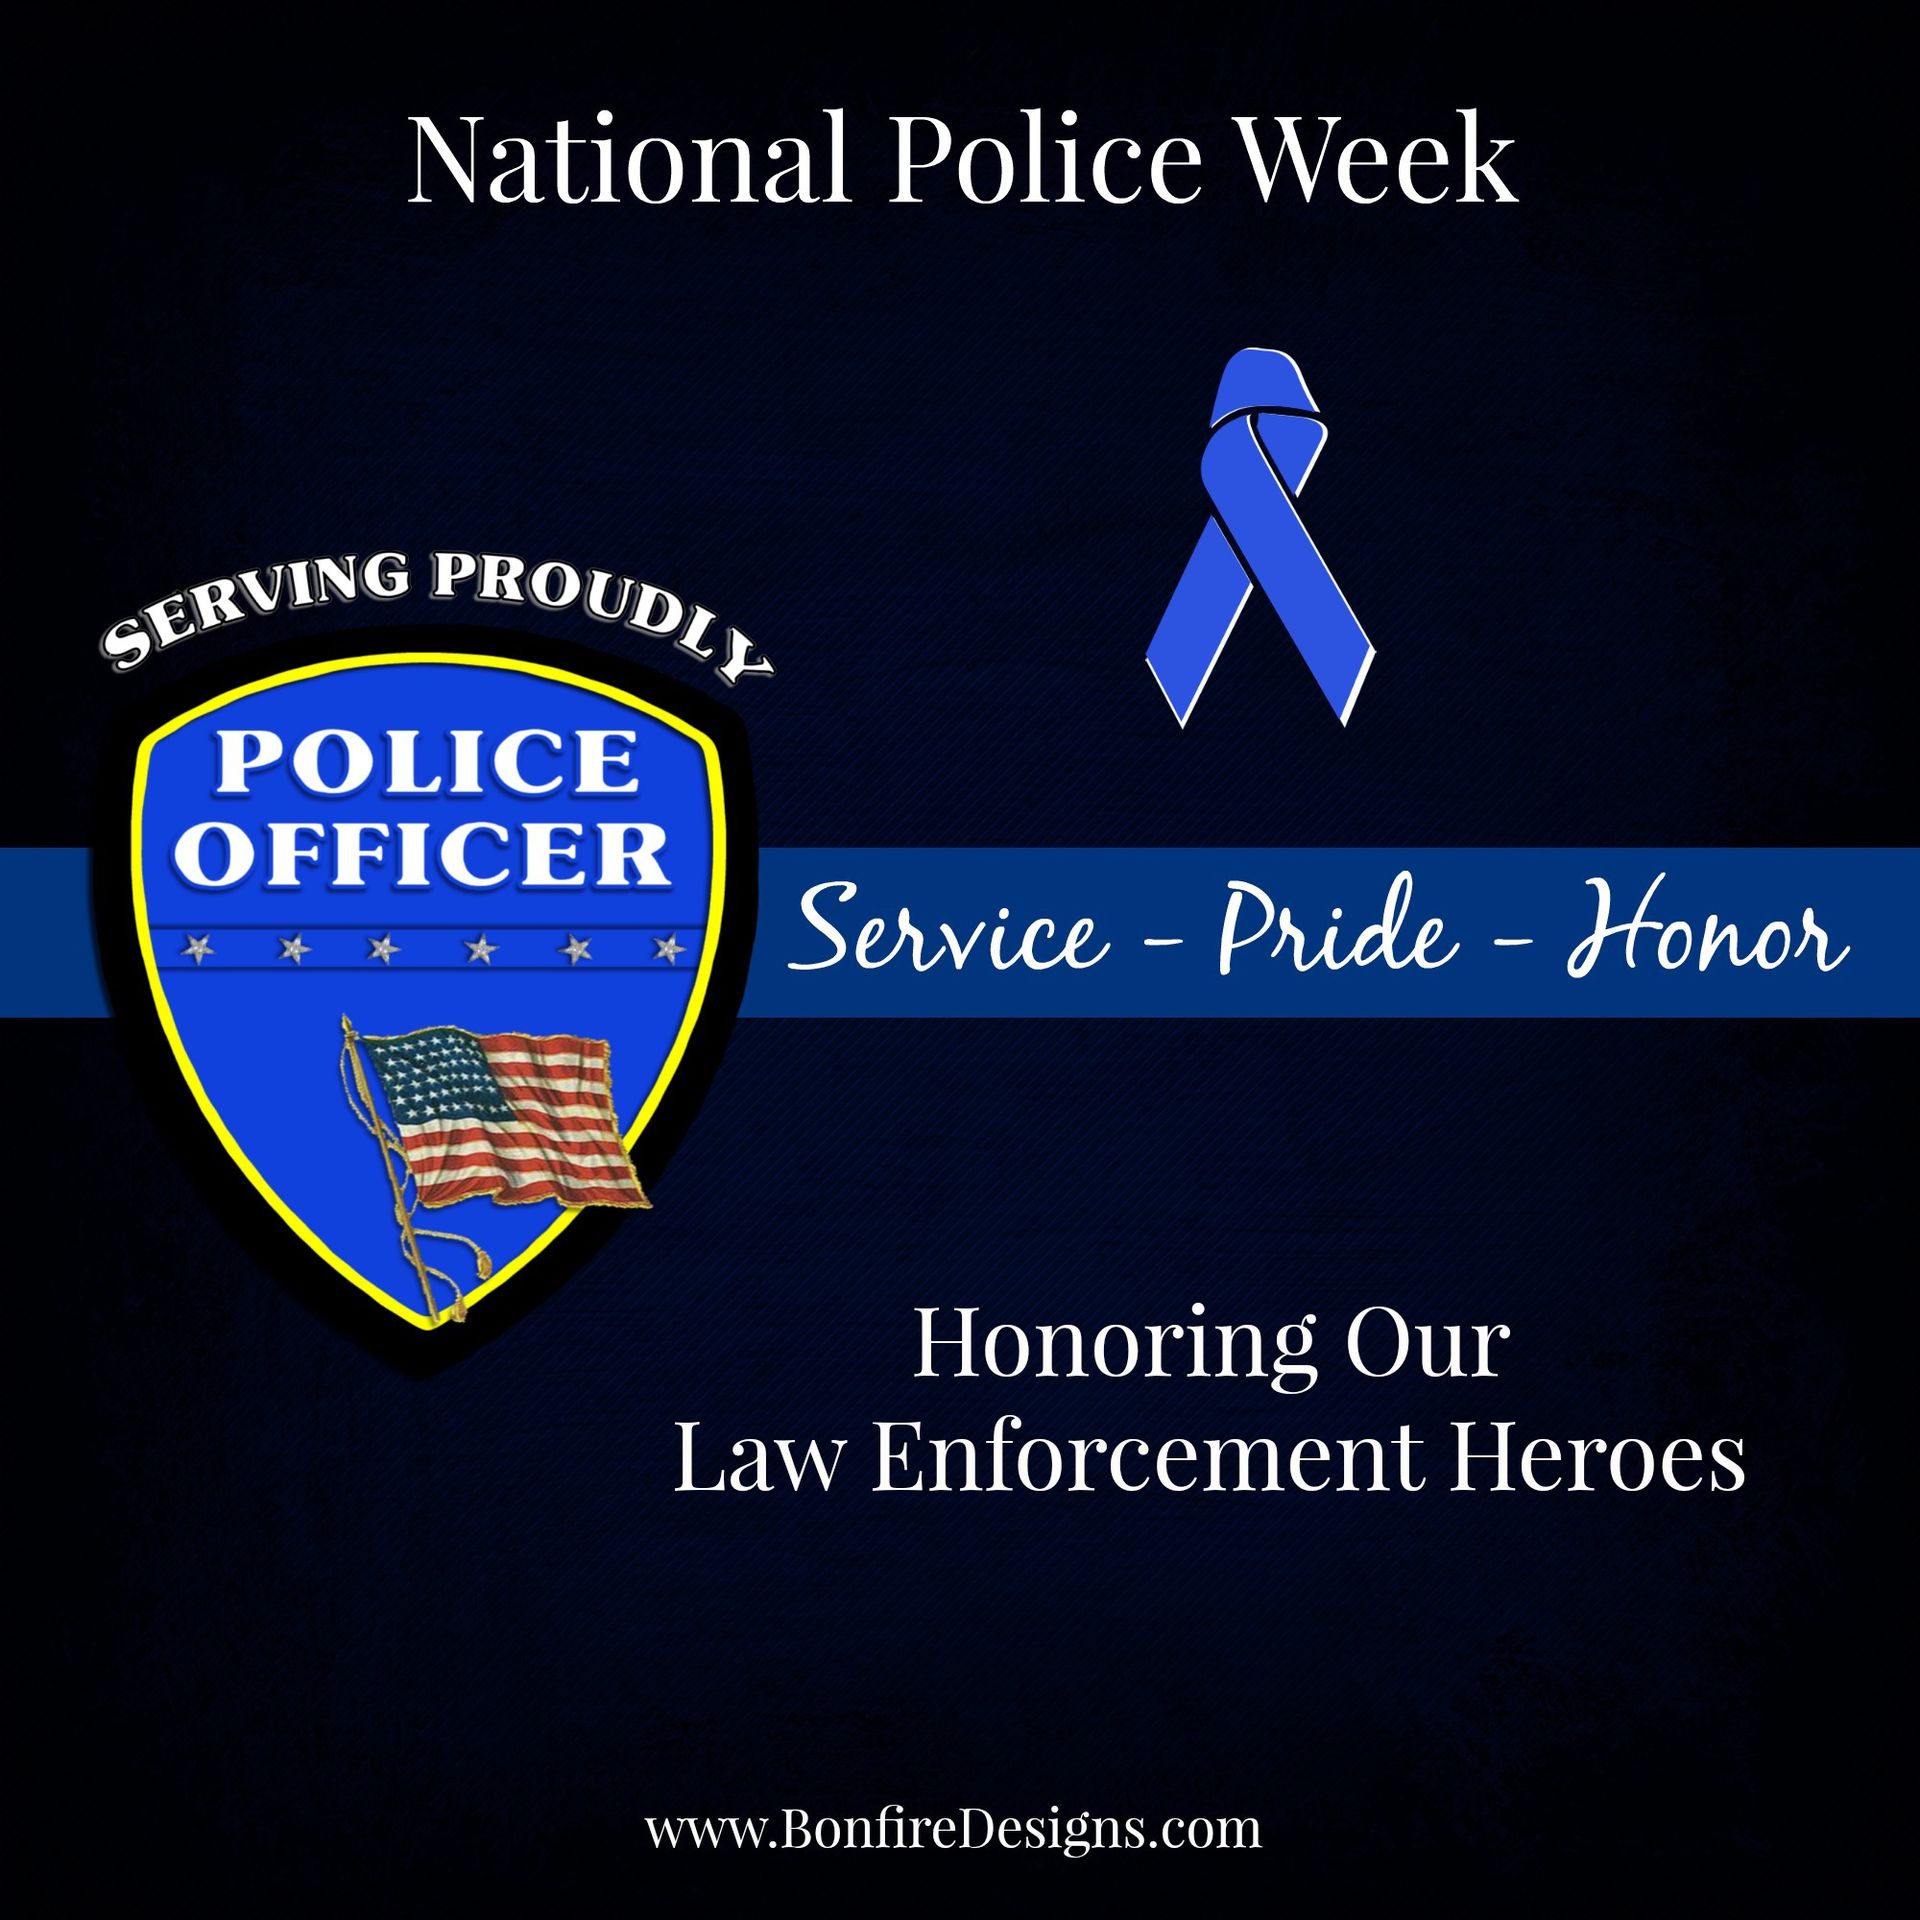 National Police Week Honoring Our Heroes